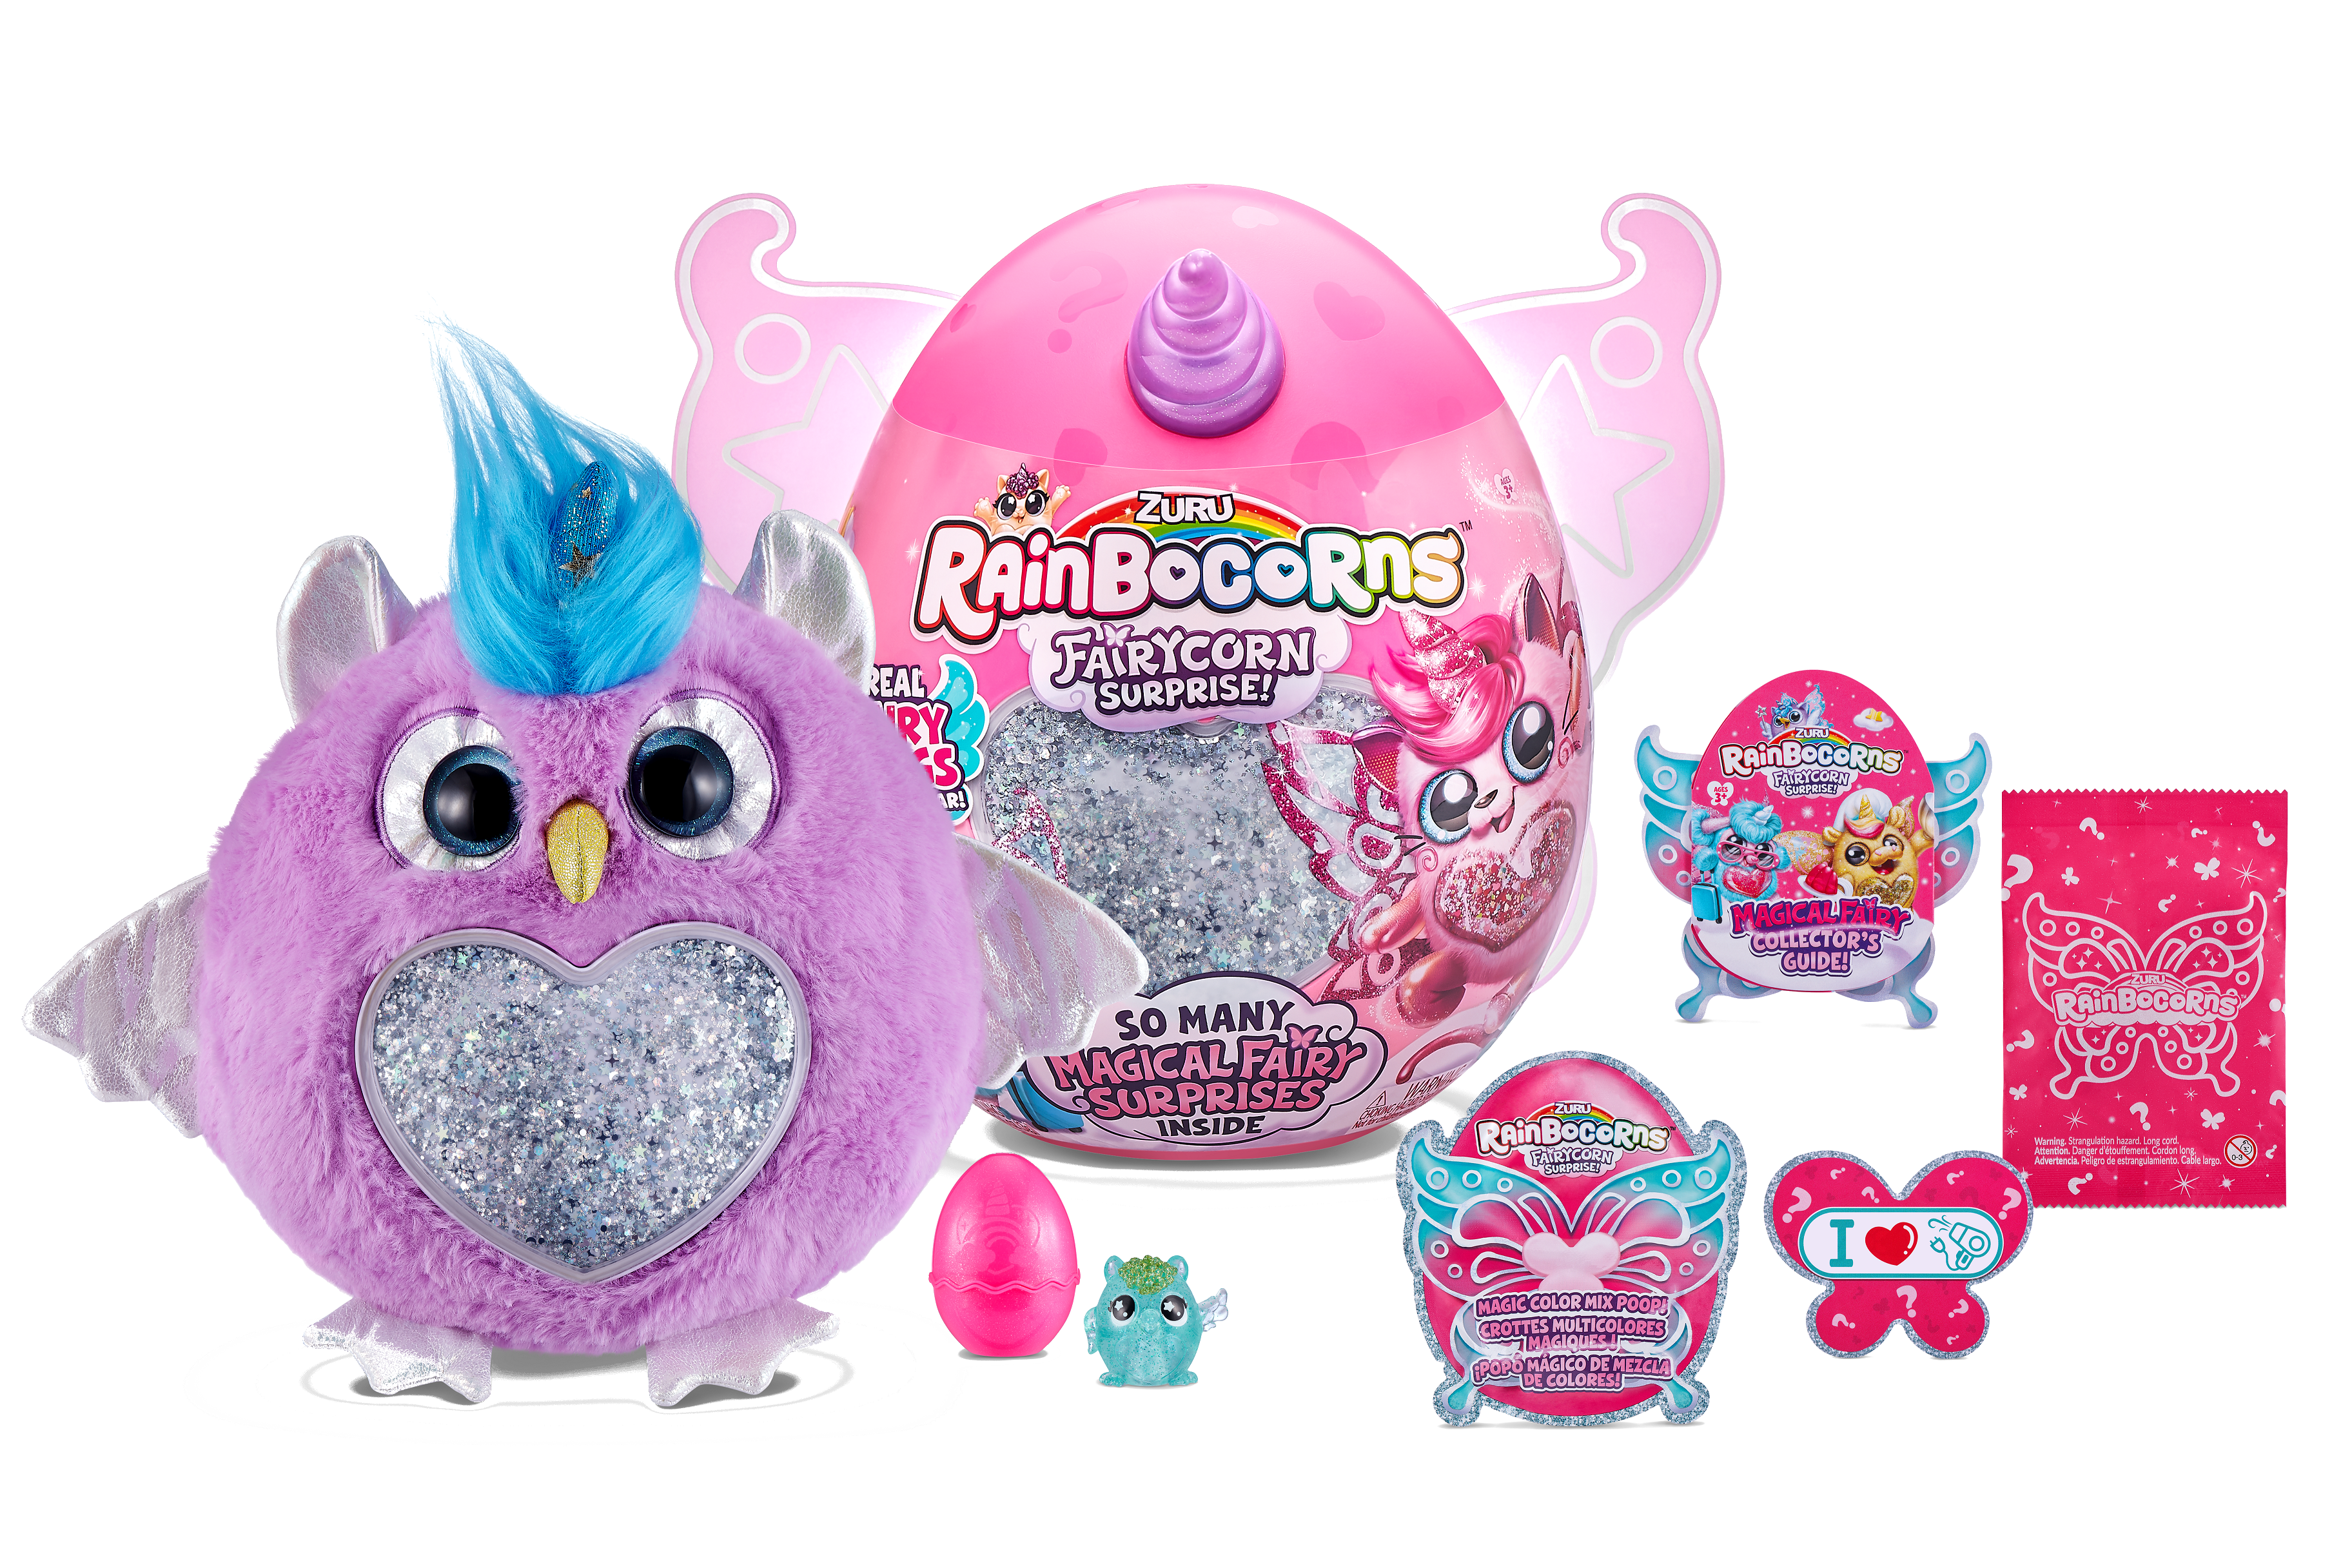 Игровой набор Rainbocorns сюрприз в яйце Fairycorn Surprise (плюш питомец , мини питомец в яйце, слайм, съемные крылышки) цвет фиолетовый— магазин-салютов.рус